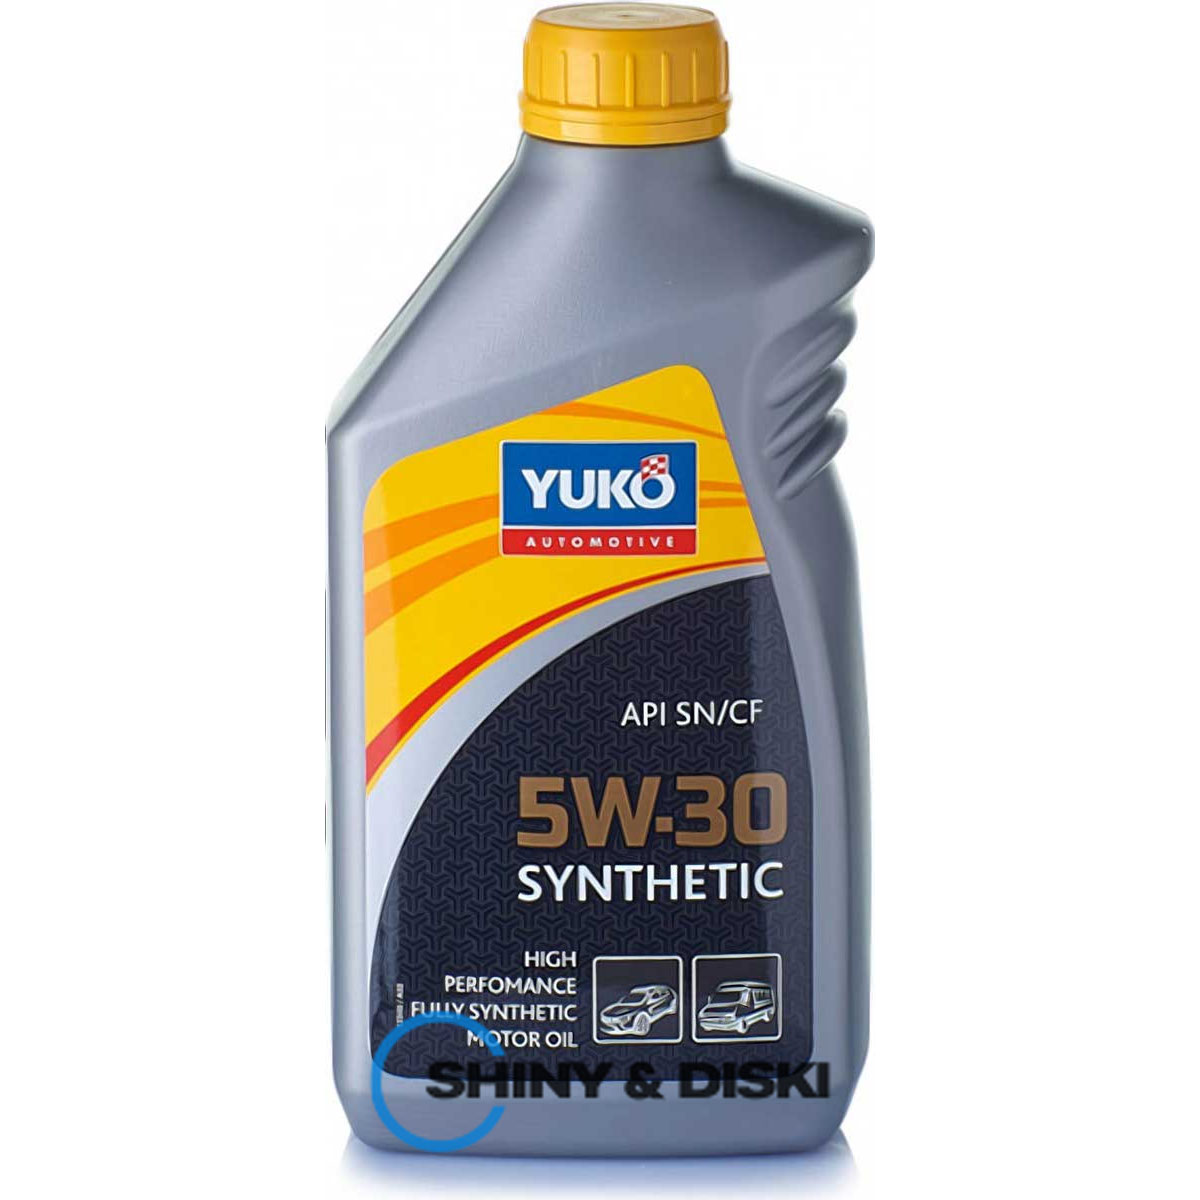 yuko synthetic